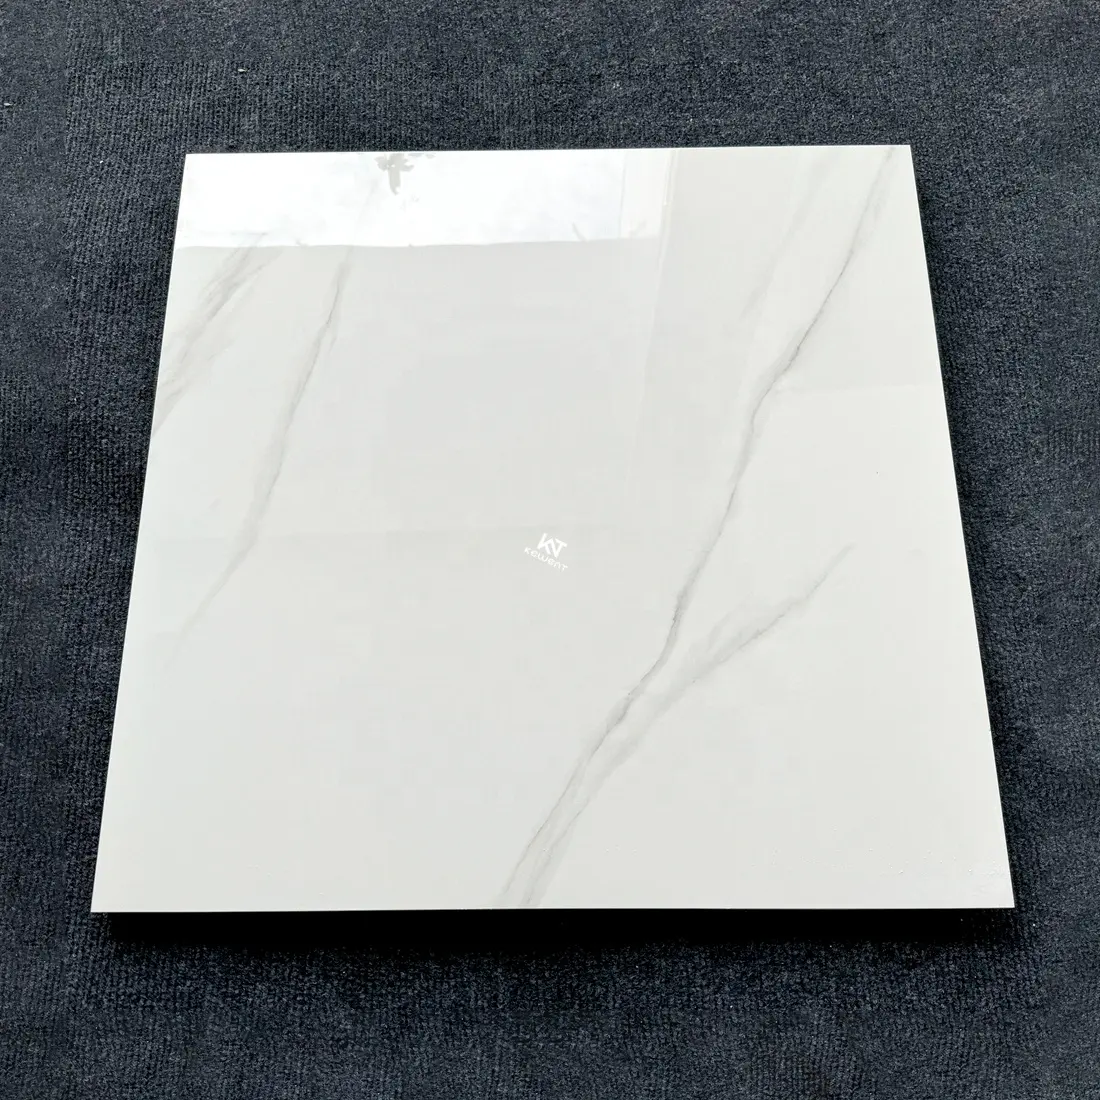 Desain kustom ubin lantai porselen marmer putih Foshan 600x600 untuk ruang tamu